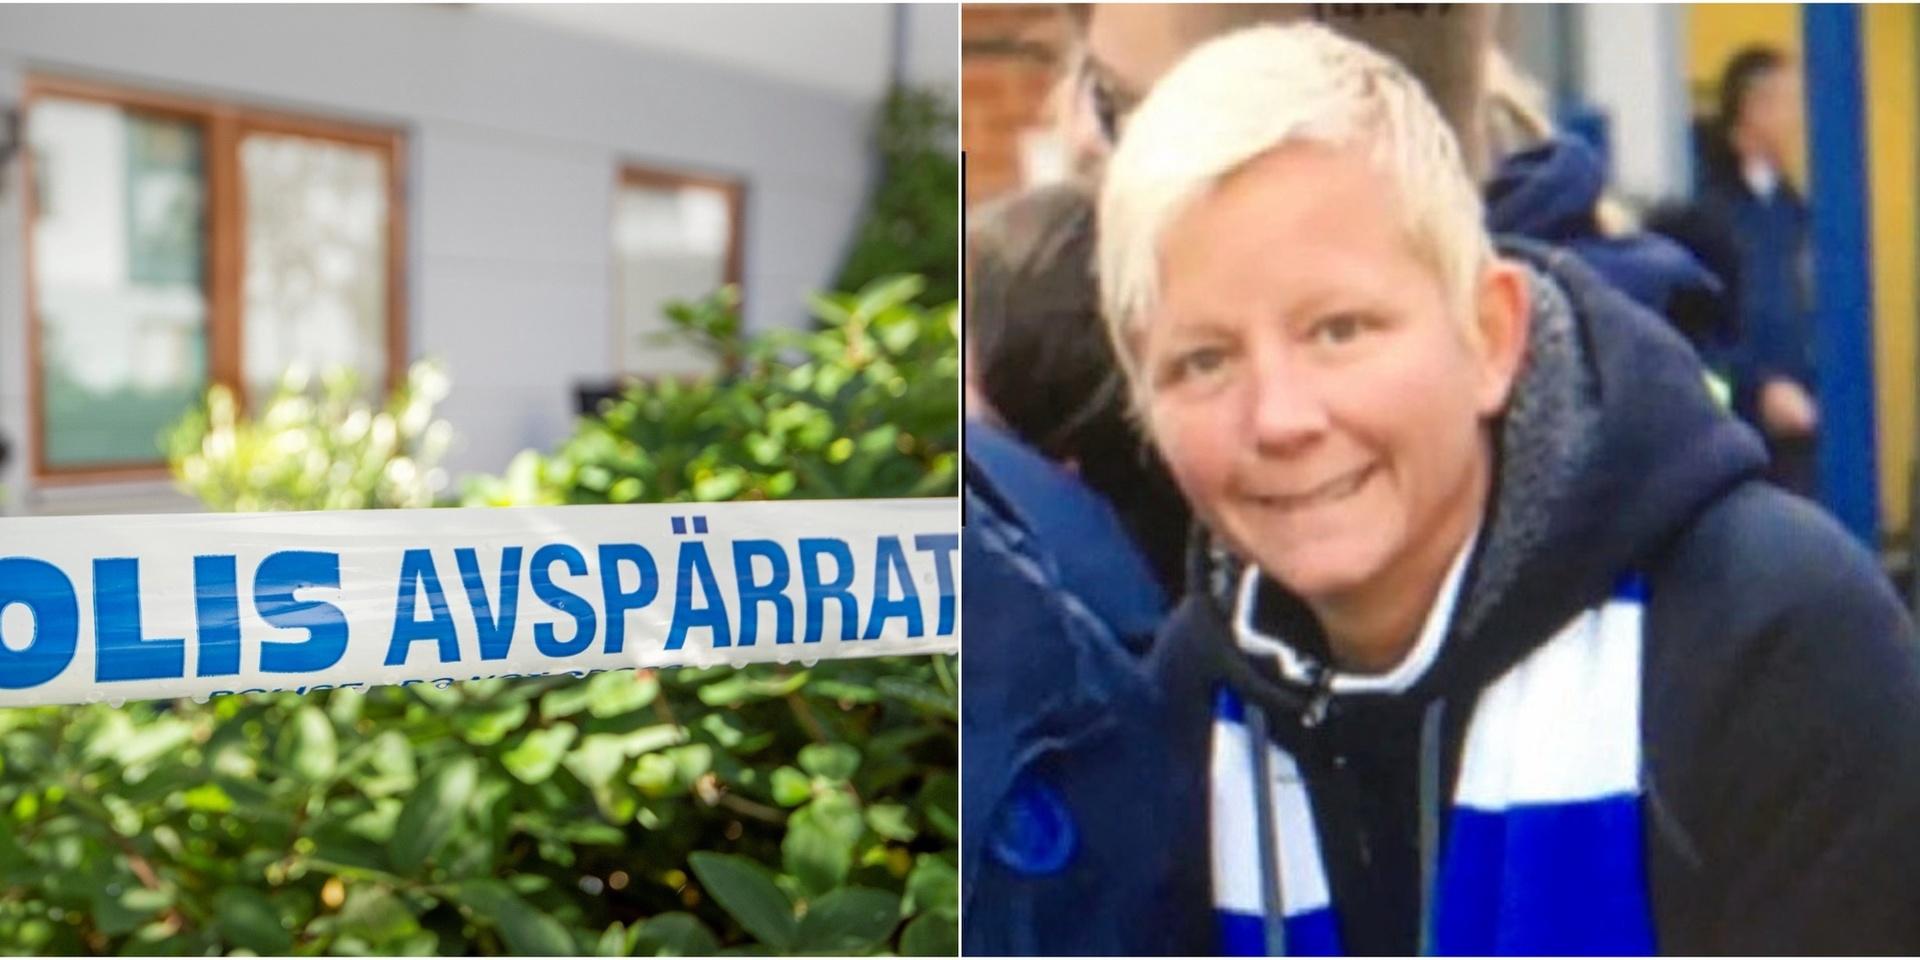 Jennie Olsson dömdes till livstids fängelse för mordet på sin kollega. I kväll sänds ett avsnitt av Svenska fall om mordet på tv3.